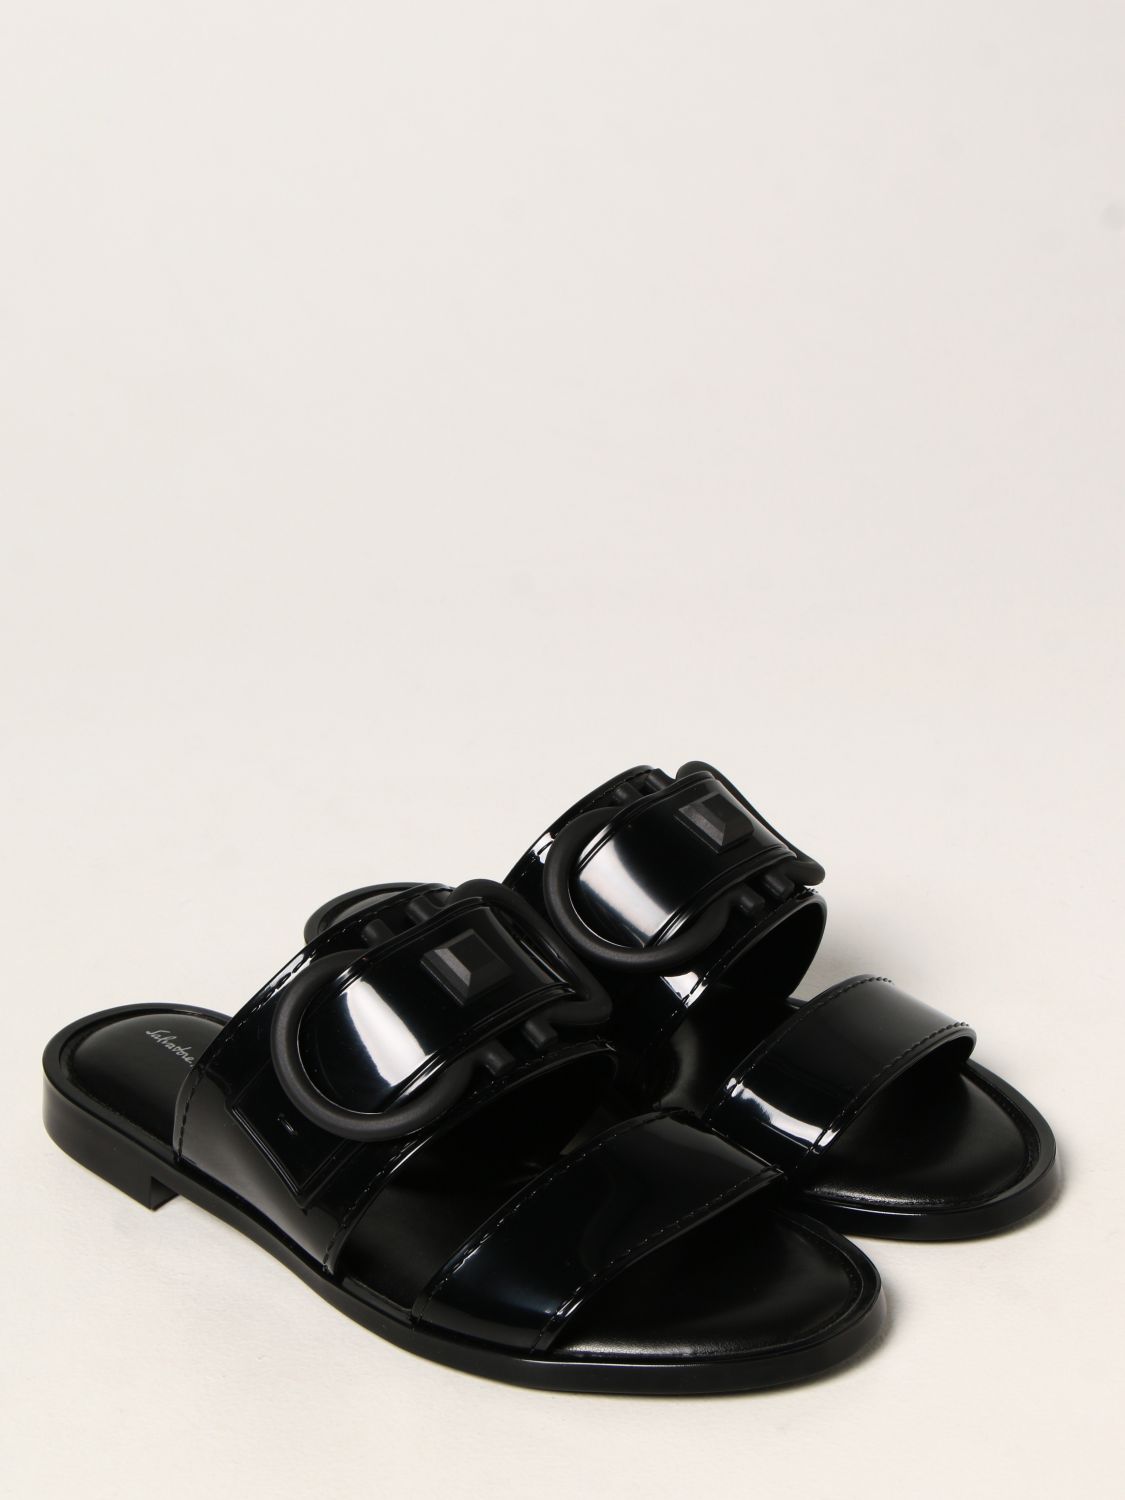 Flat sandals Salvatore Ferragamo: Shoes women Salvatore Ferragamo black 2